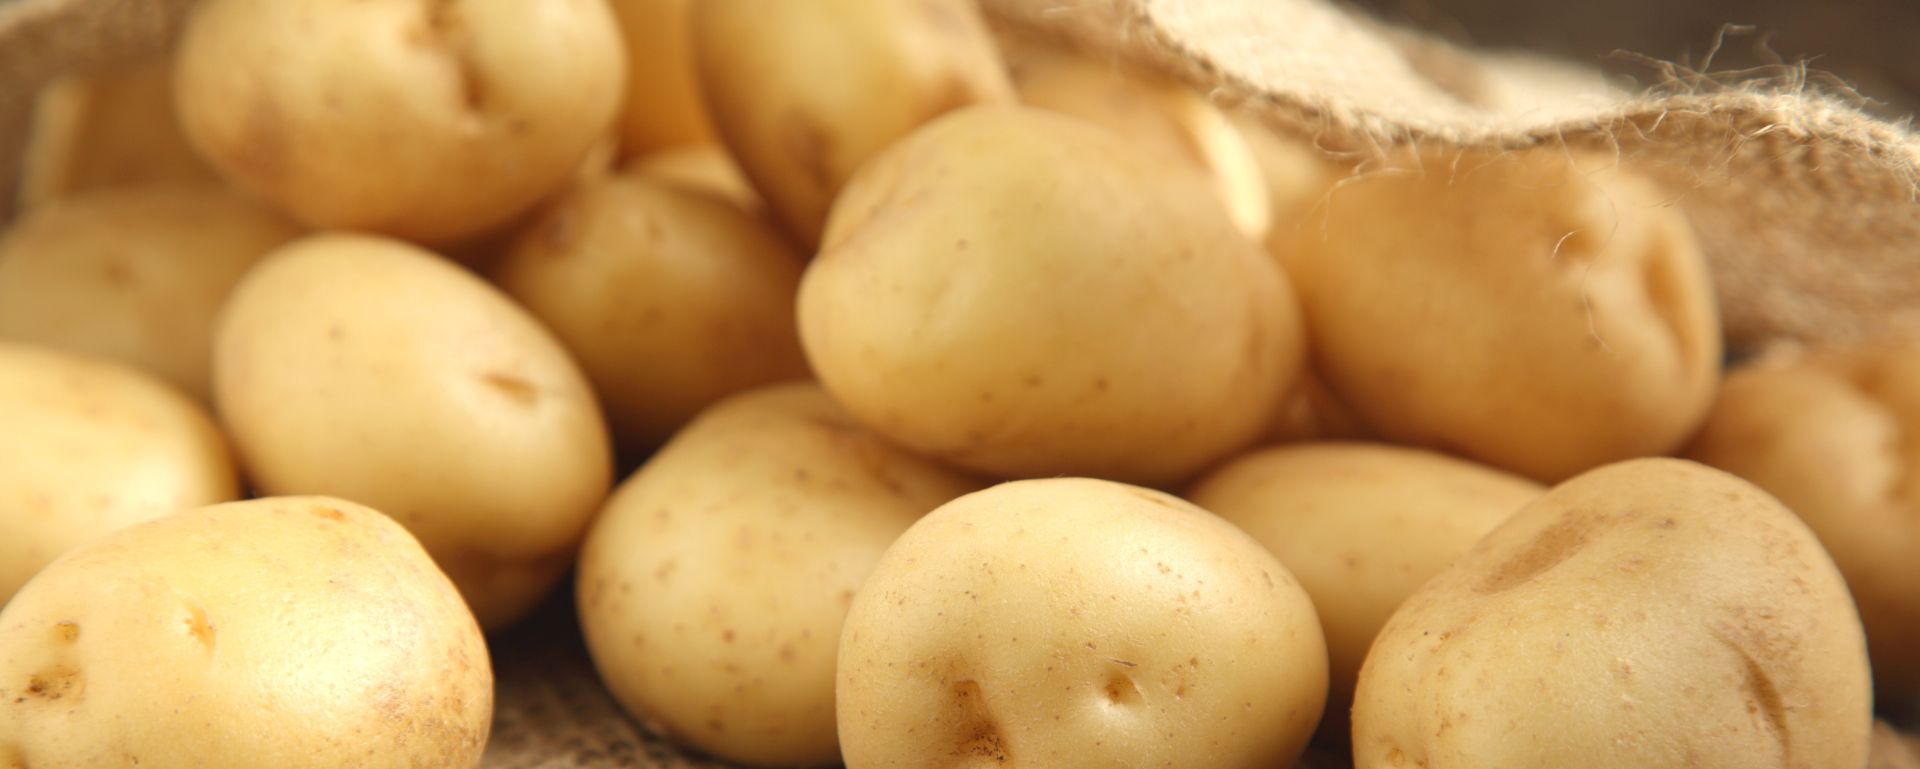 Der Deutsche Kartoffelhandelsverband positioniert sich zu den agrar- und ernährungspolitischen Vorhaben der Ampel-Regierung